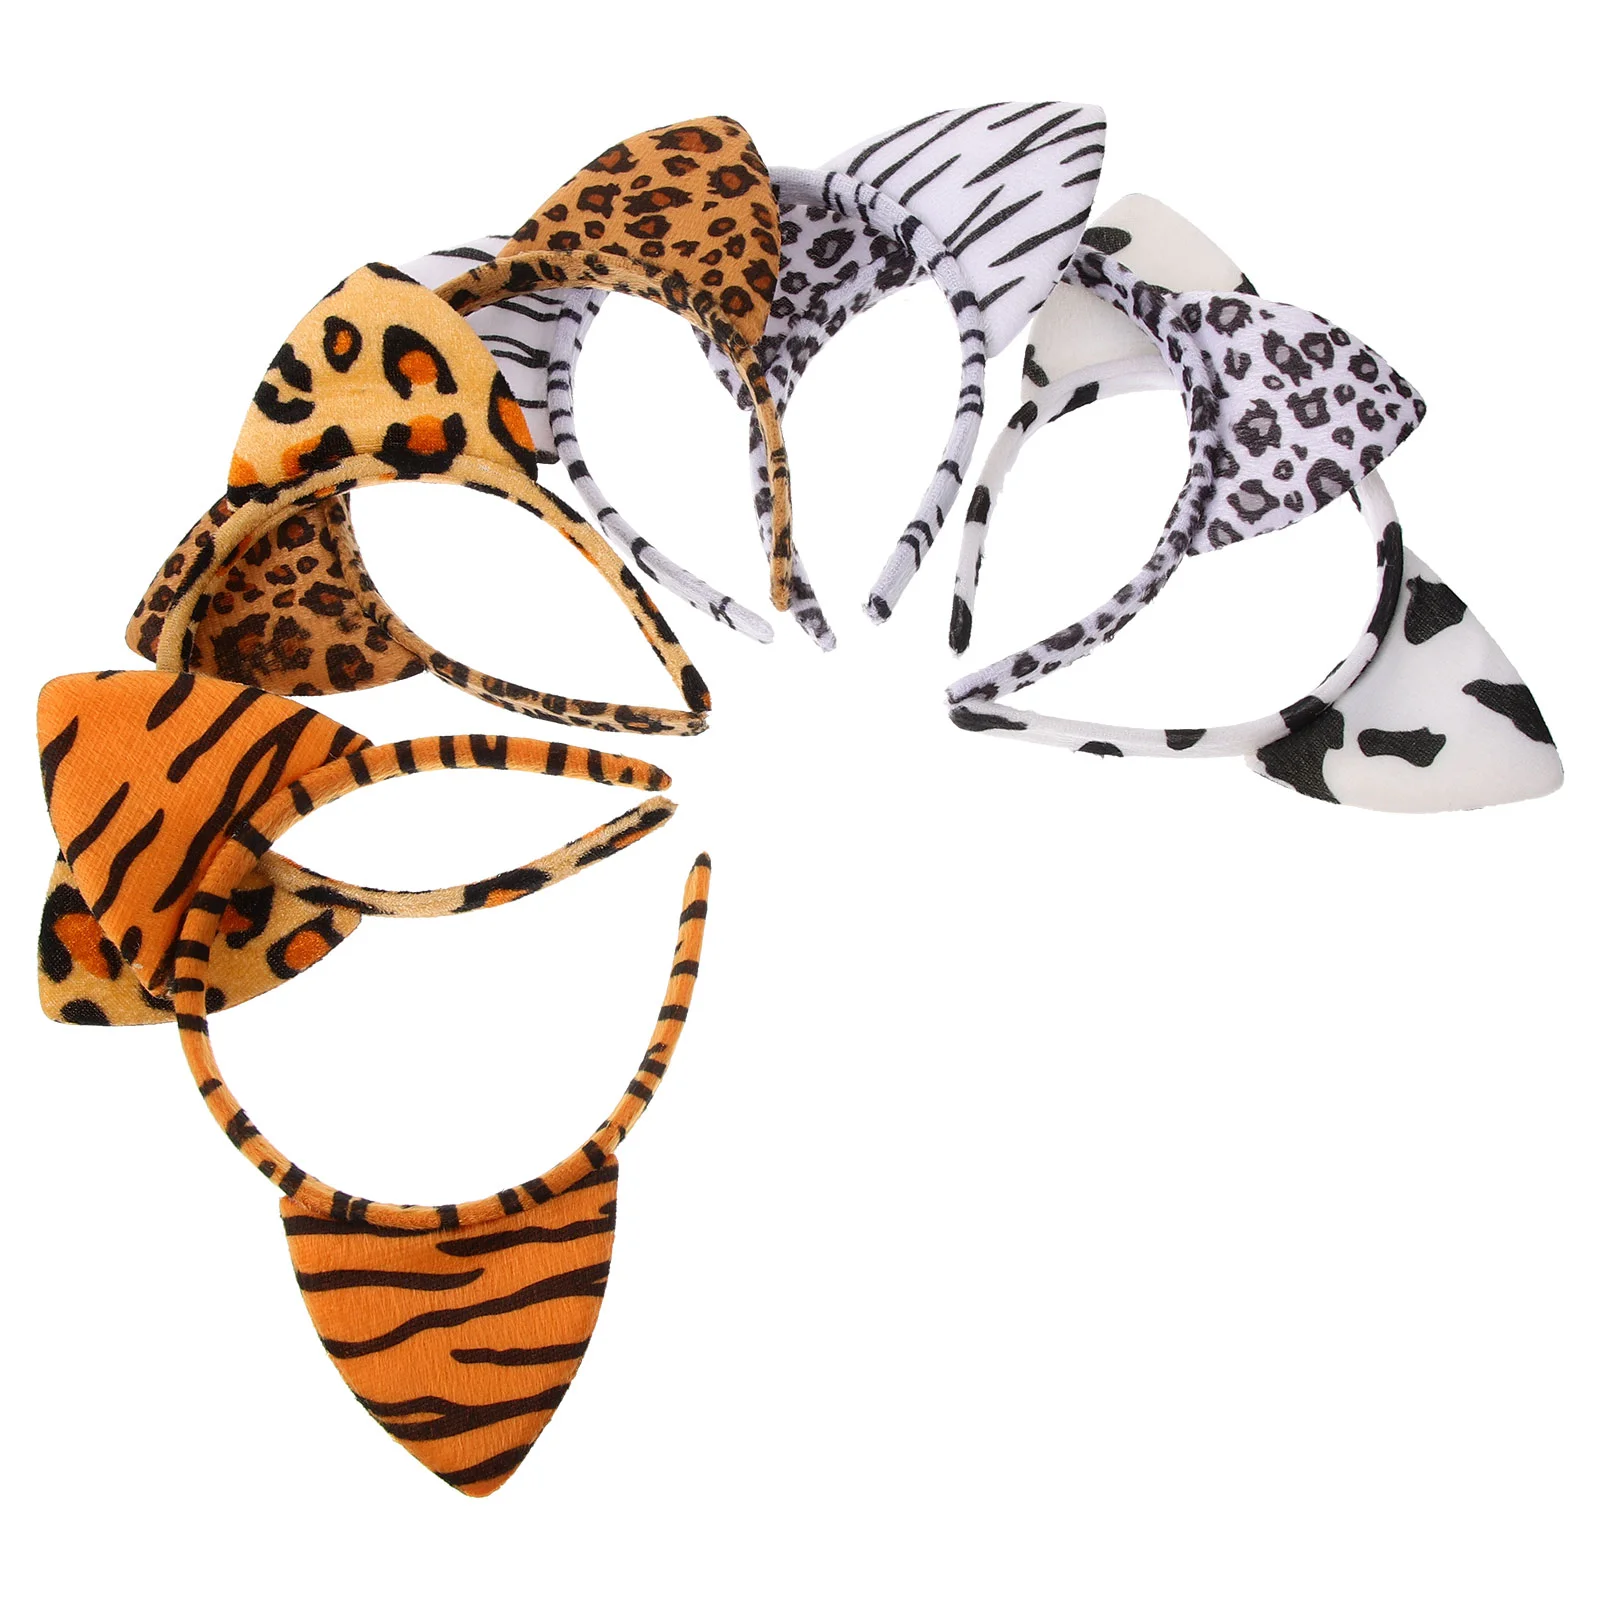 

Аксессуары для волос для девочек плюшевый Леопардовый аксессуар для волос Искусственный шар костюм Одежда Реквизит